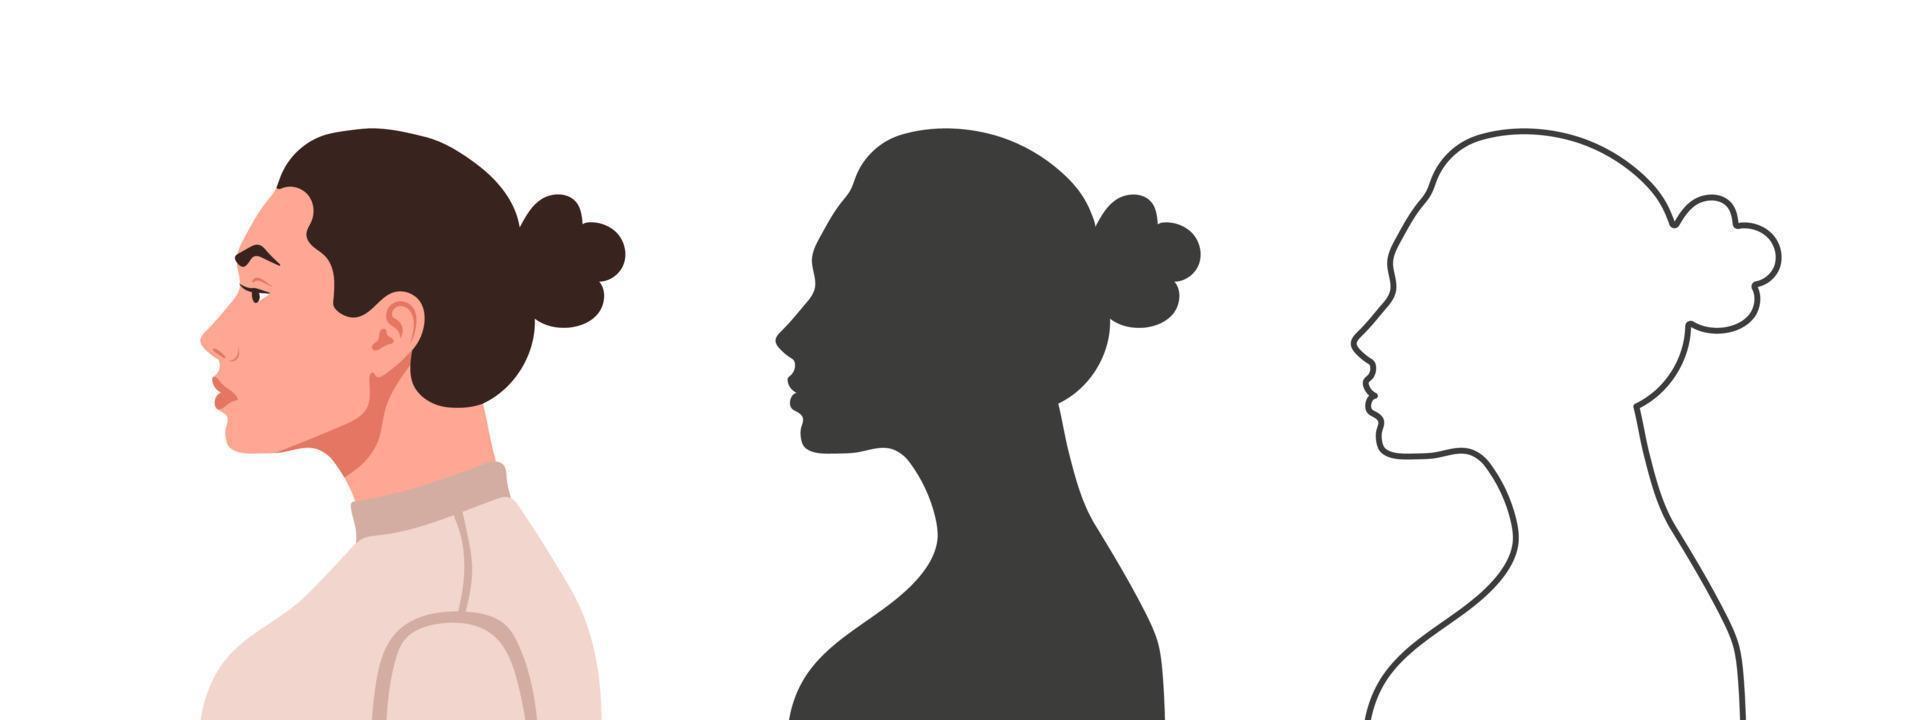 profiel van de hoofd. vrouw gezicht van de kant. silhouetten van mensen in drie verschillend stijlen. gezicht profiel. vector illustratie